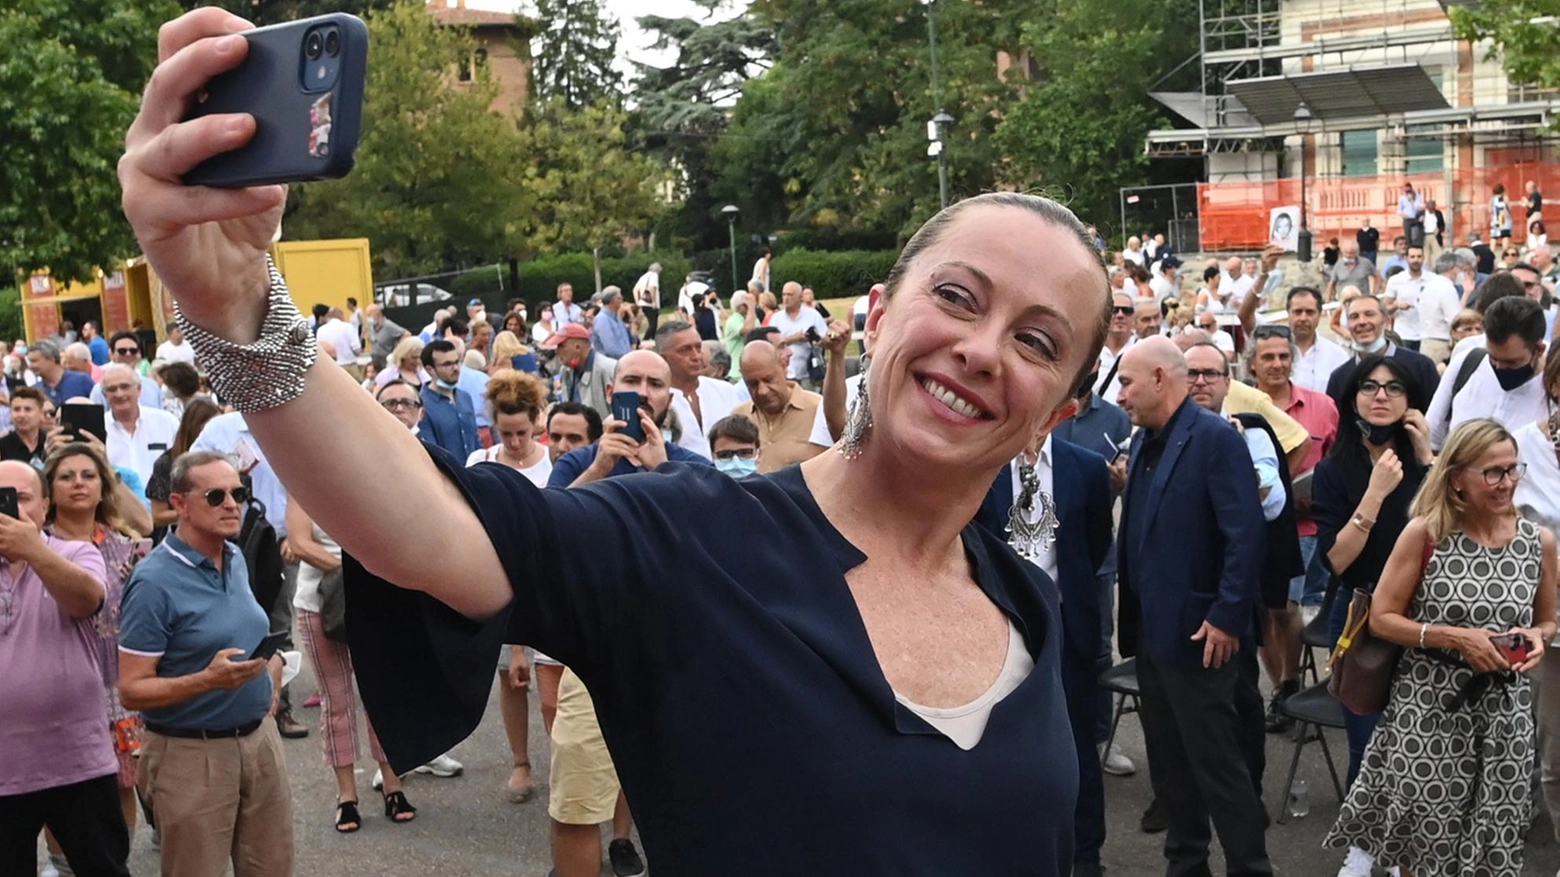 Giorgia Meloni, 44 anni, leader di Fratelli d’Italia, scatta un selfie a Bologna